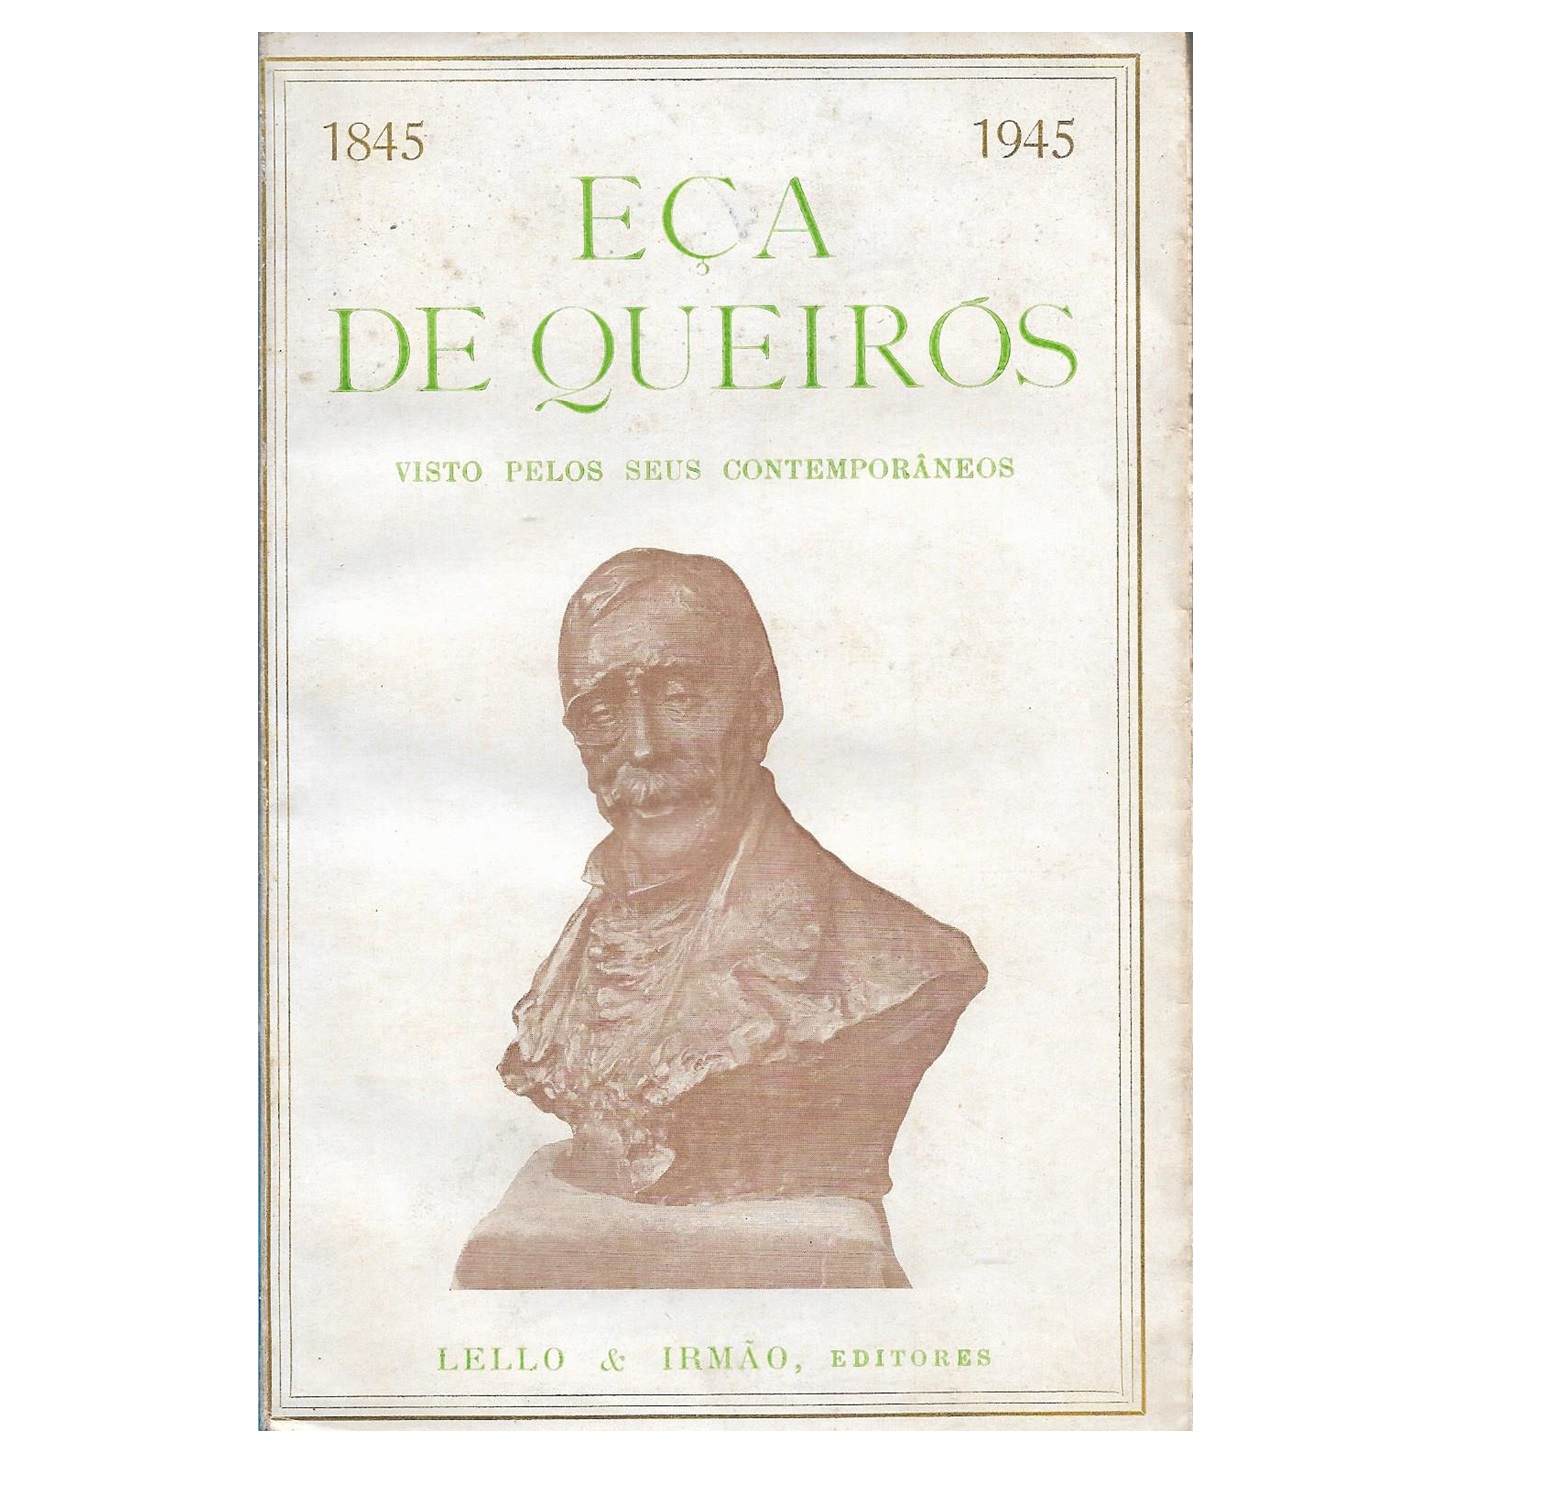 EÇA DE QUEIRÓS VISTO PELOS SEUS CONTEMPORÂNEOS, 1845-1945